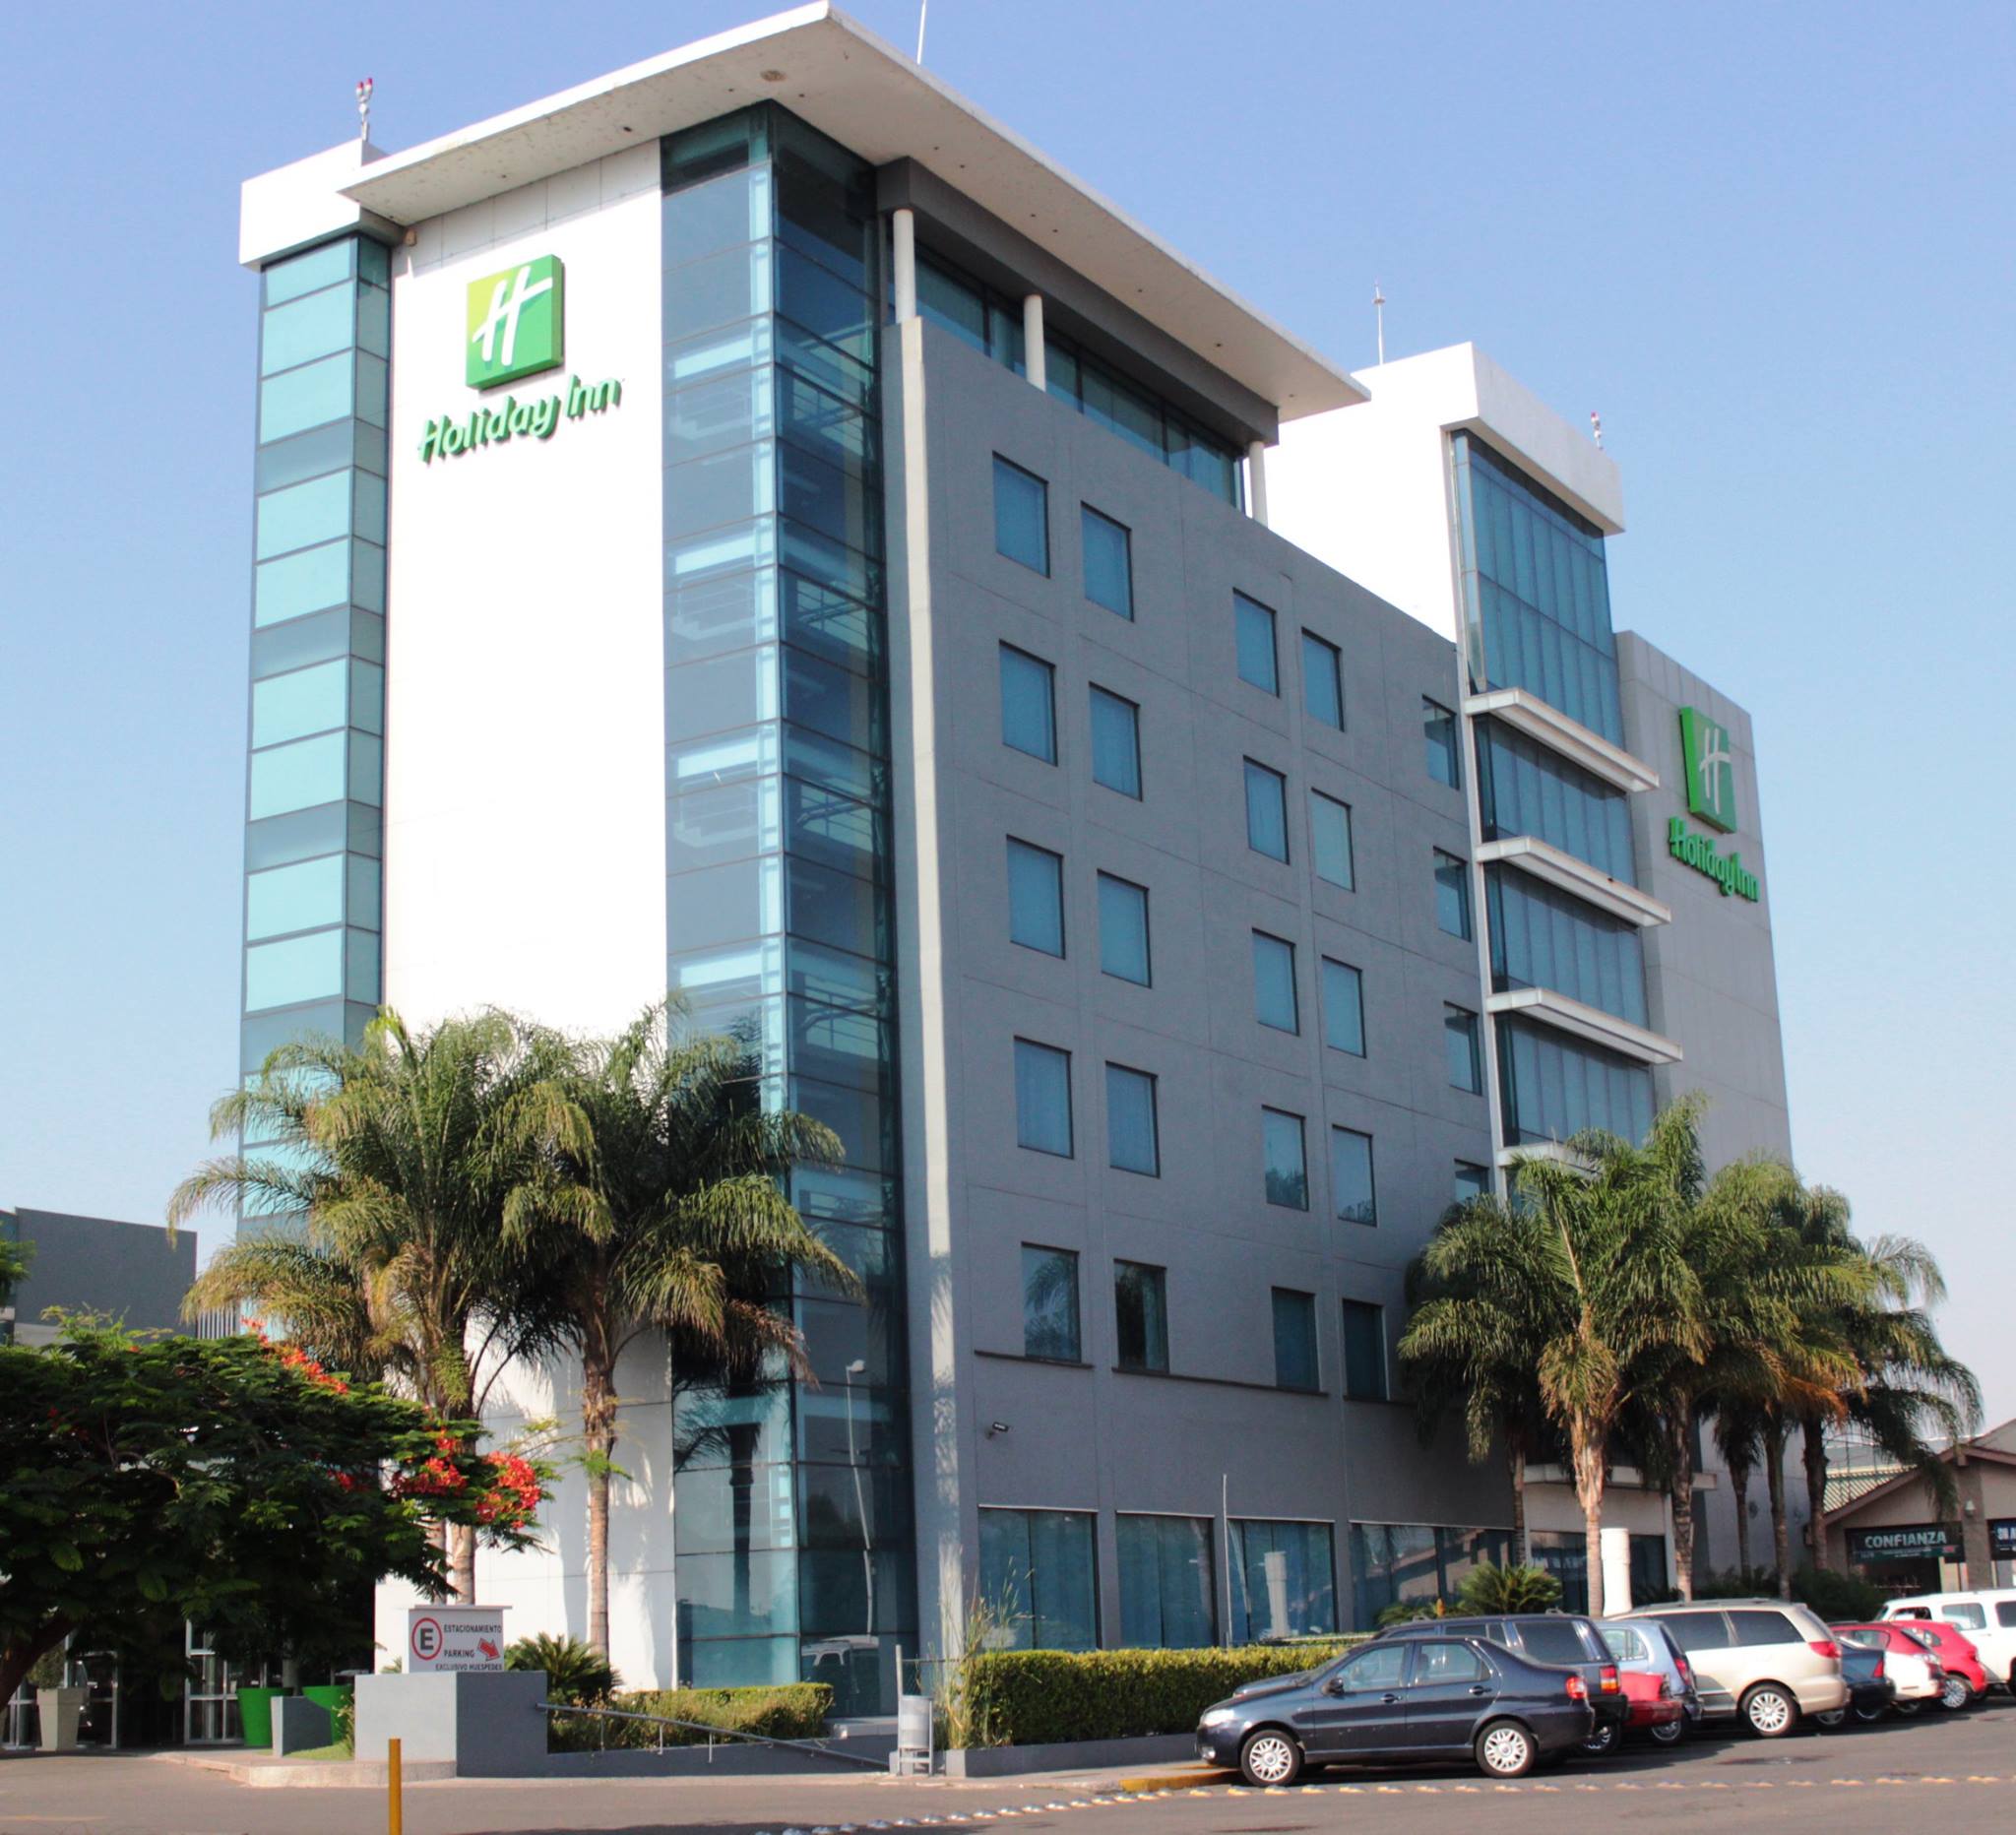 Más pérdida de empleos: cierran definitivamente los dos hoteles Holiday Inn en Irapuato